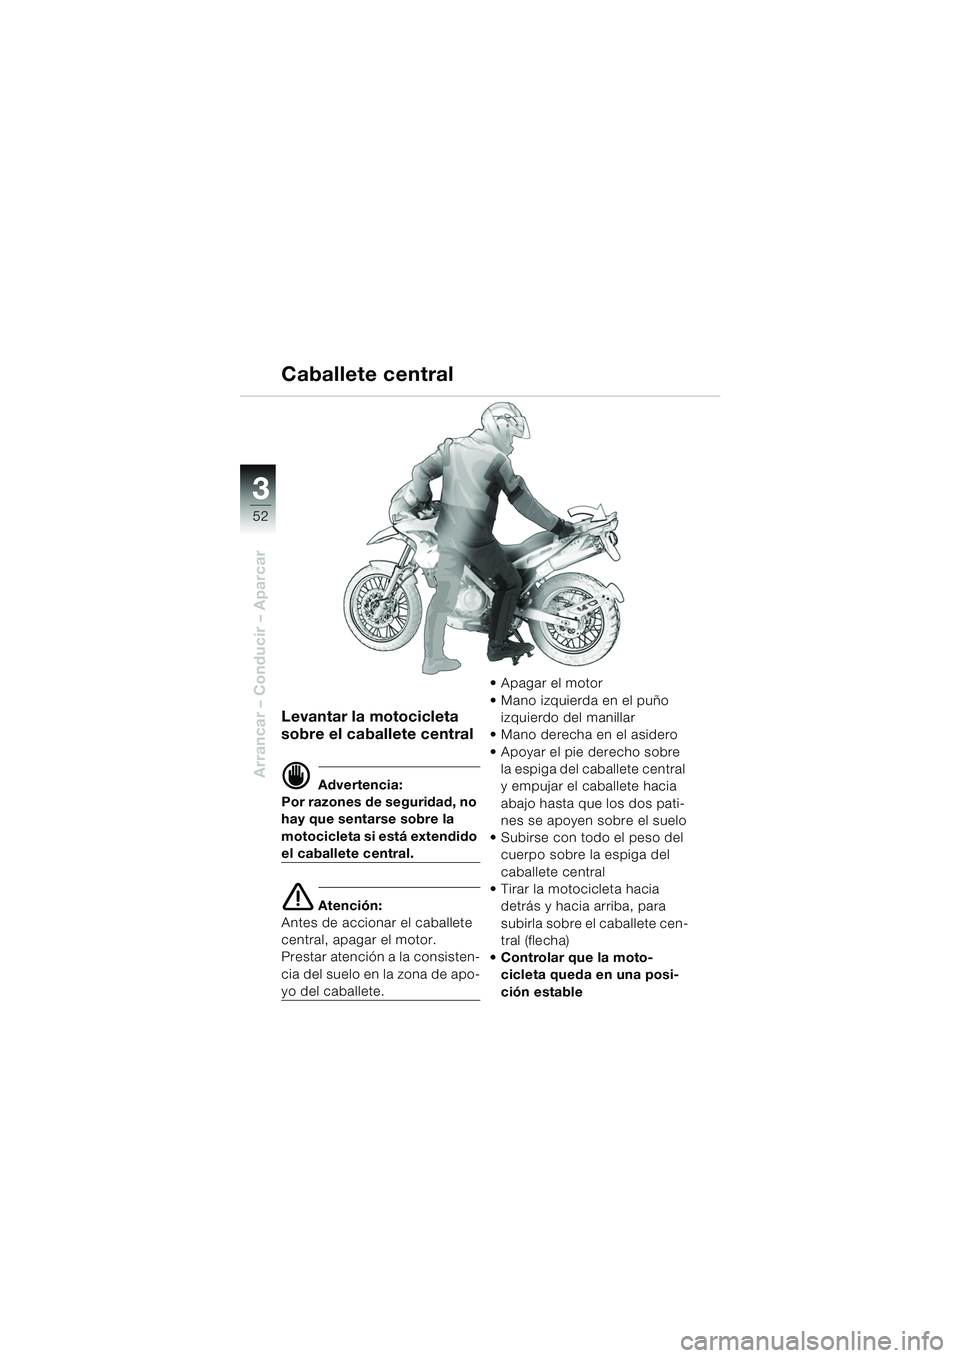 BMW MOTORRAD F 650 GS DAKAR 2003  Manual de instrucciones (in Spanish) 3
52
Arrancar – Conducir – Aparcar
Levantar la motocicleta 
sobre el caballete central
d Advertencia:
Por razones de seguridad, no 
hay que sentarse sobre la 
motocicleta si está extendido 
el ca